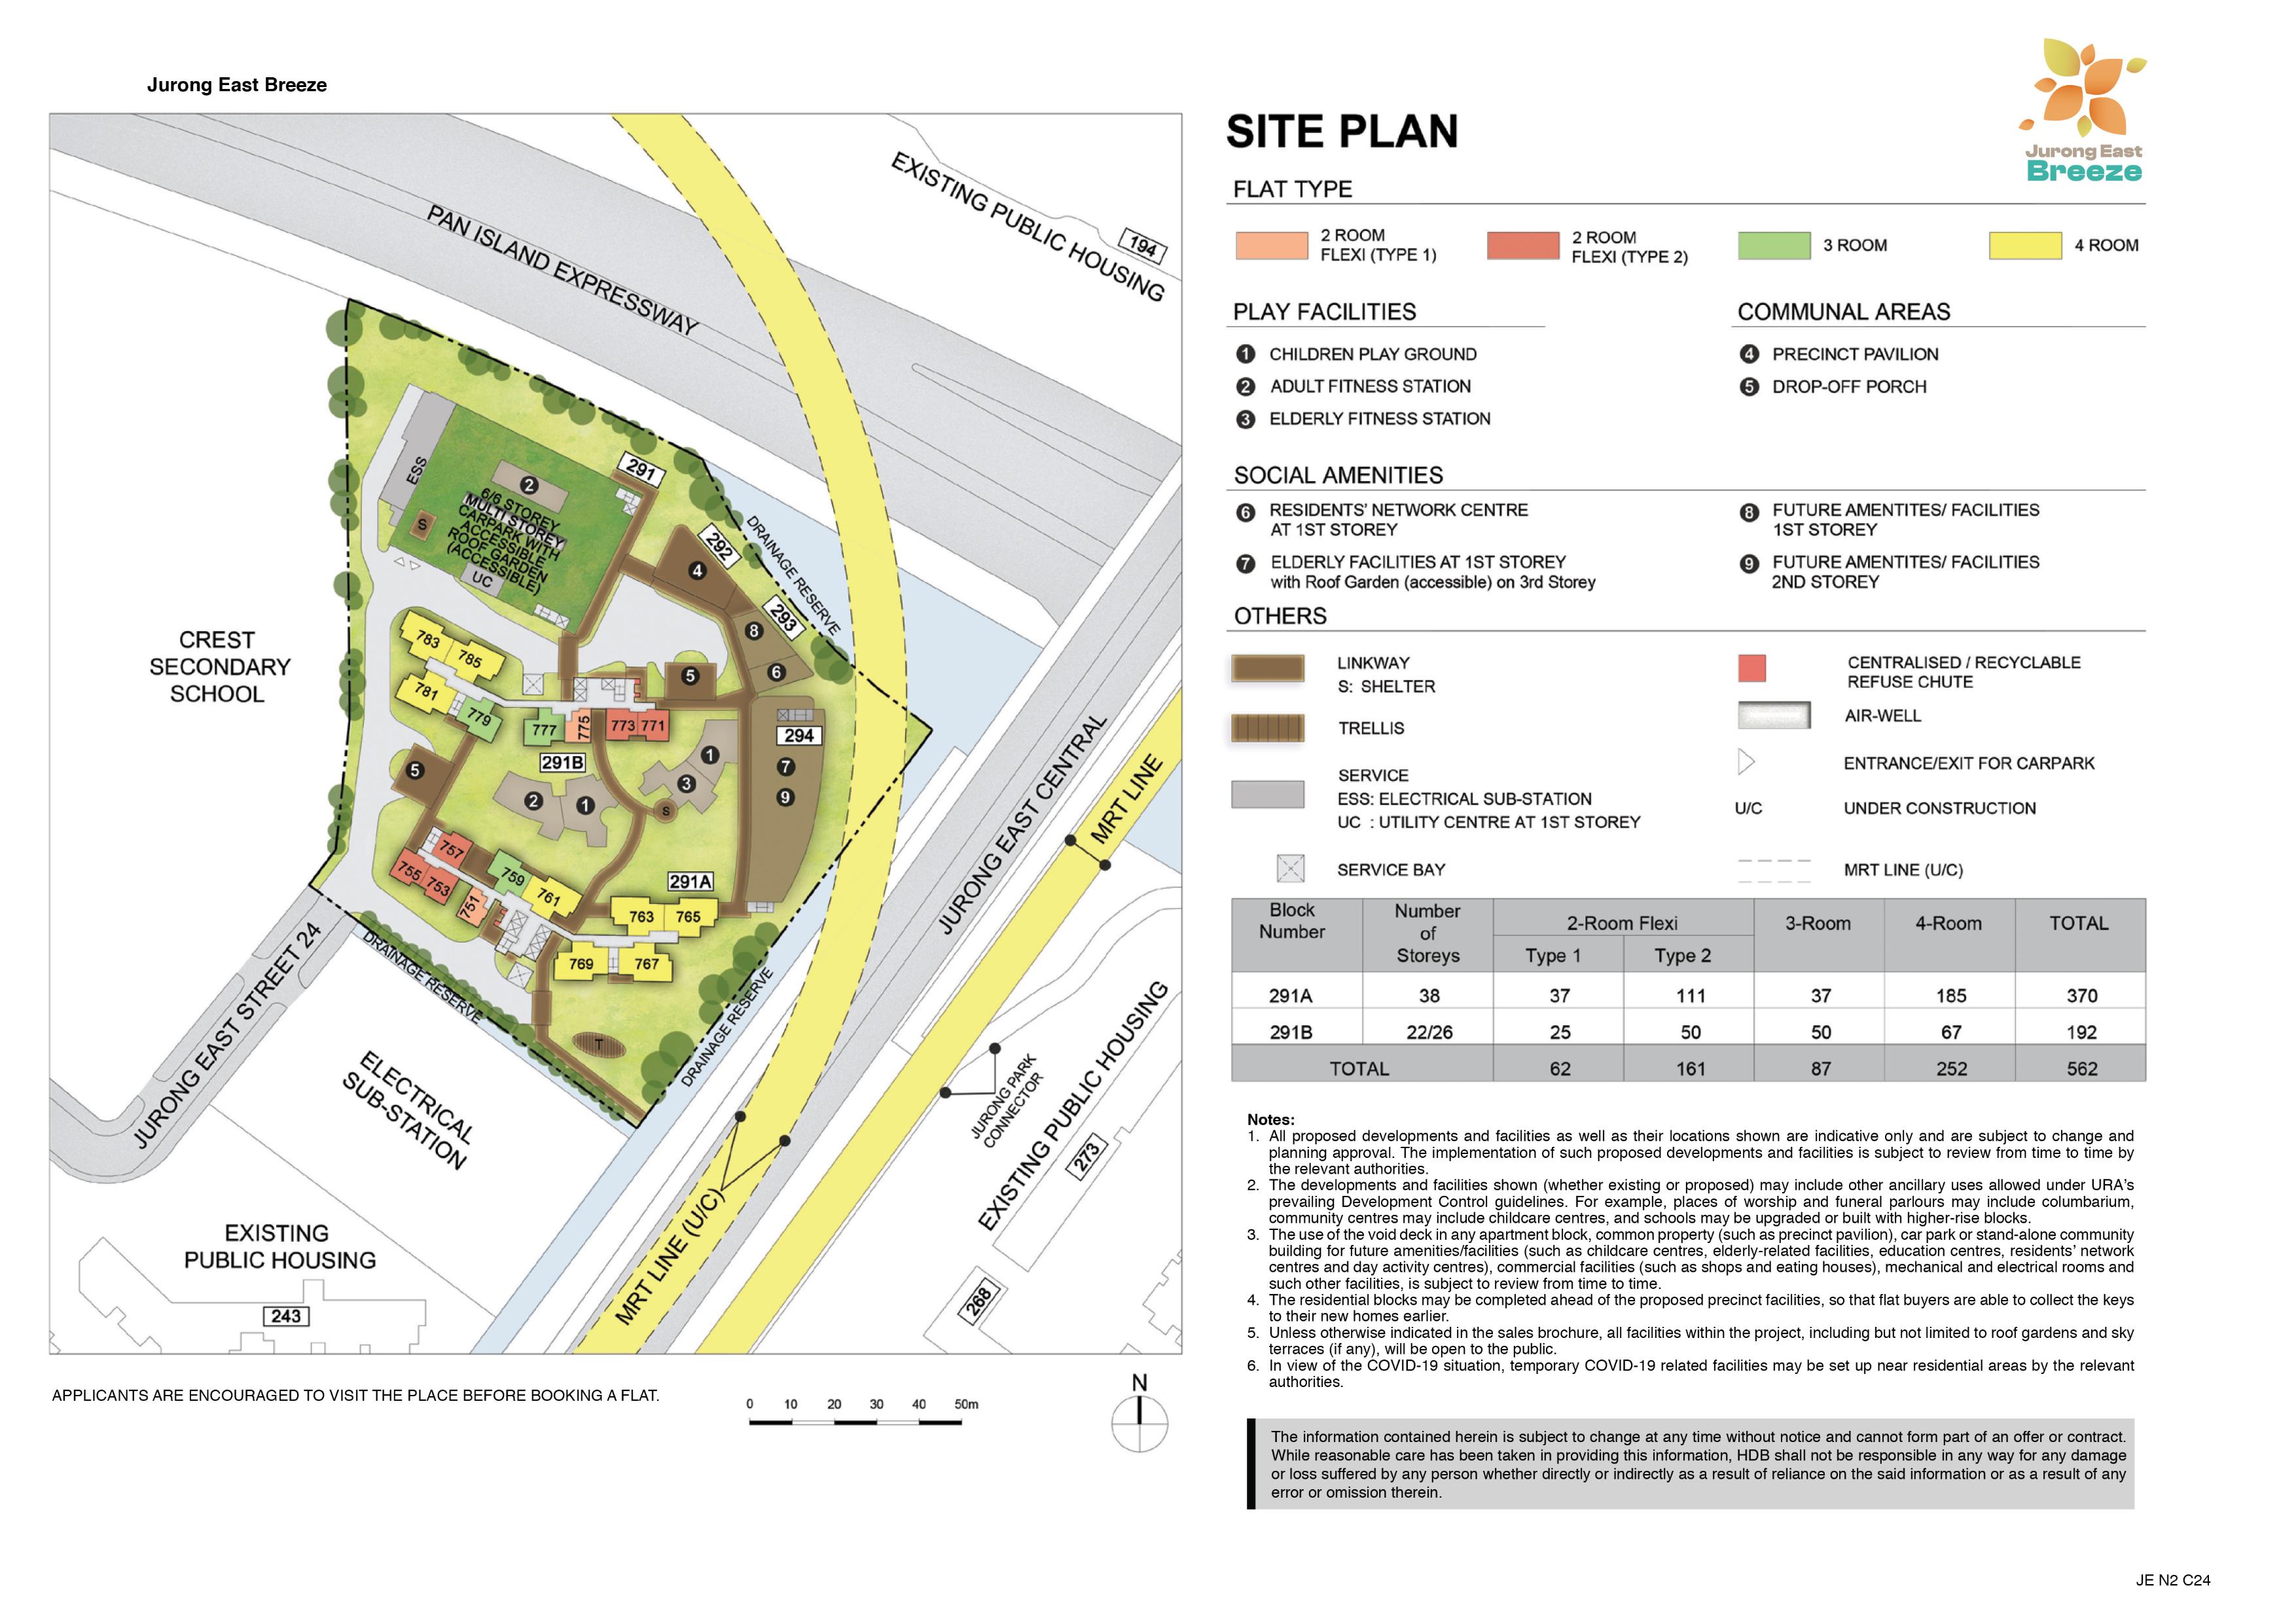 Jurong East Breeze Site Plan